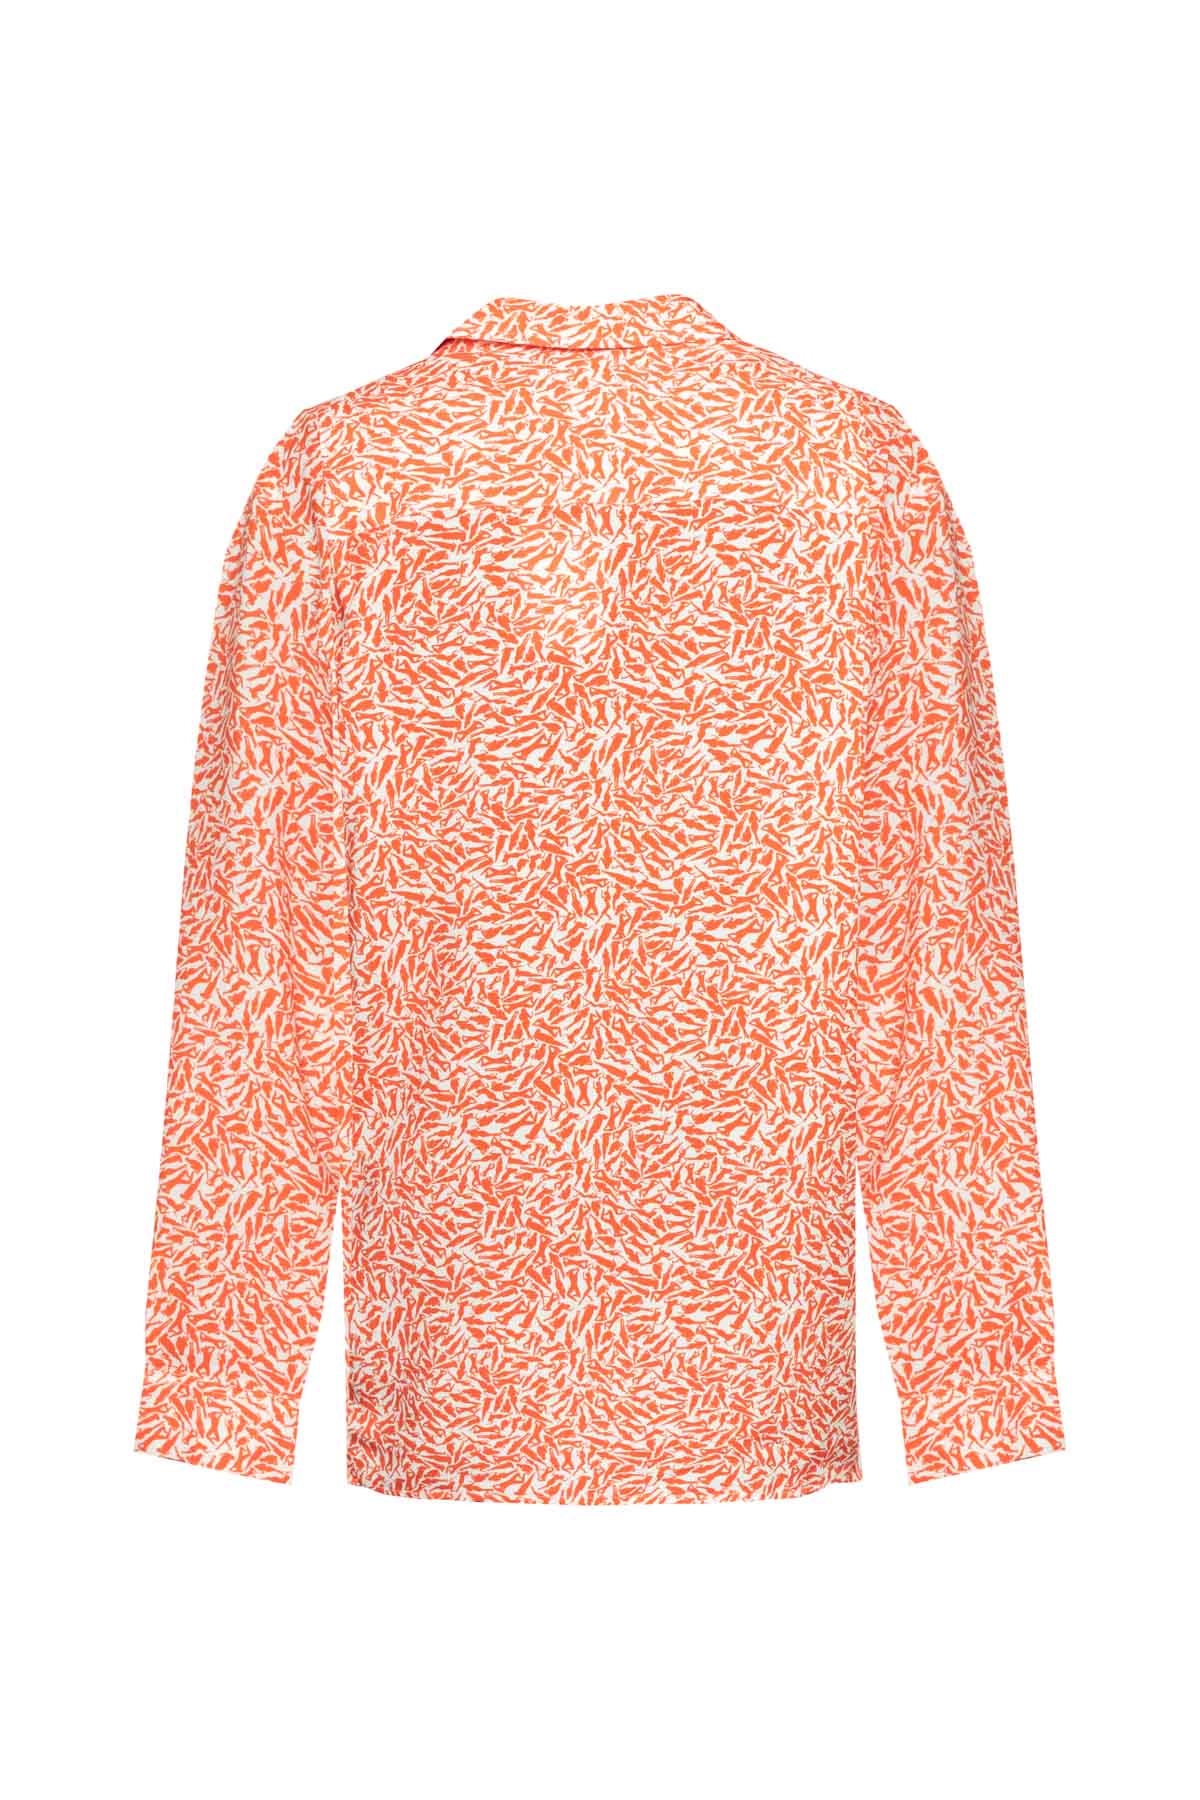 Men's Shirt - Orange Naked Ladies Print